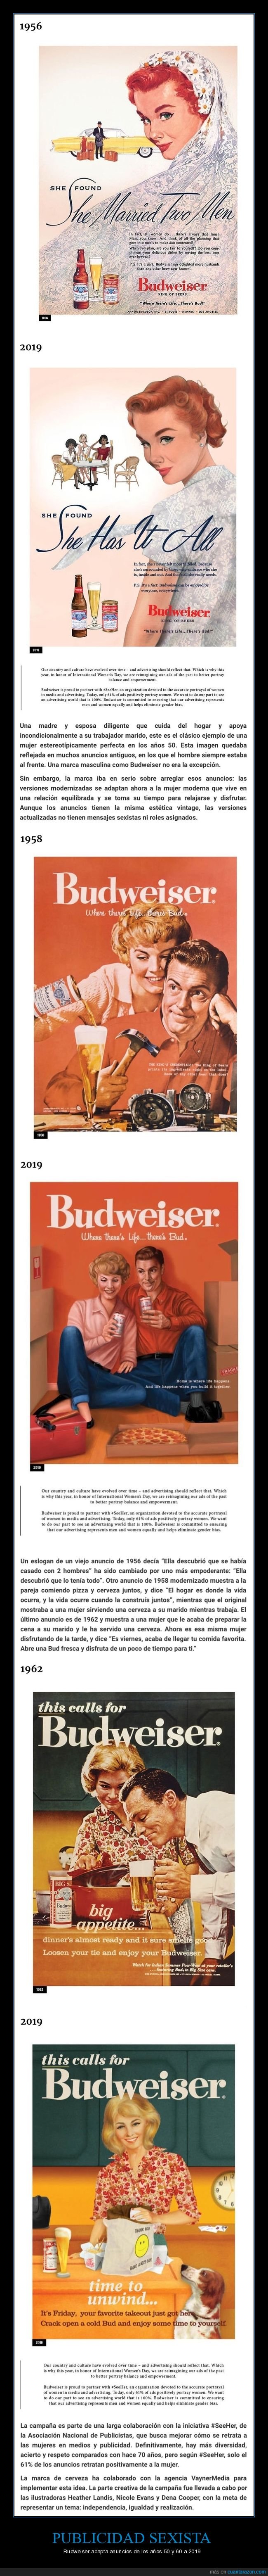 2019,adaptar,años 50,años 60,budweiser,publicidad